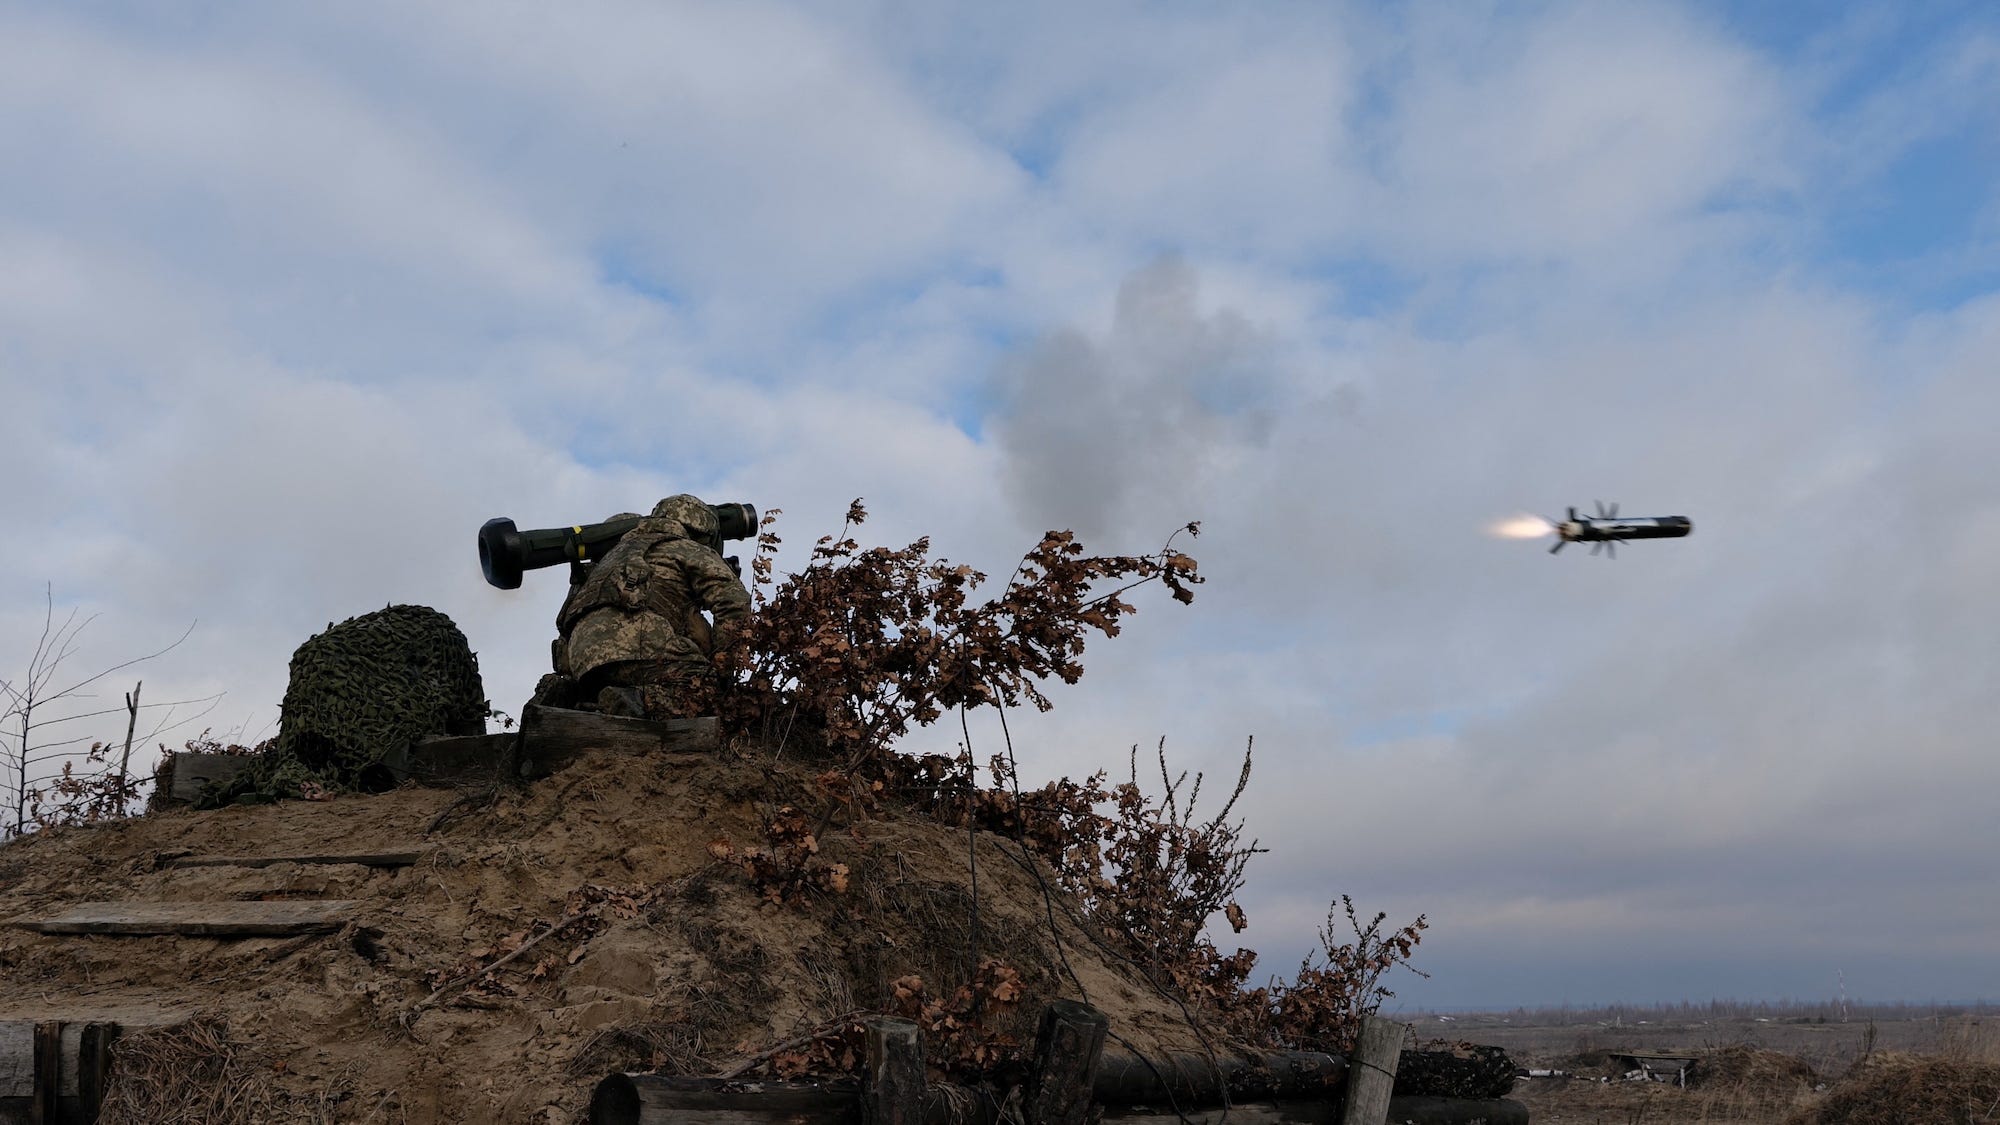 Ukraine Javelin anti-tank missile